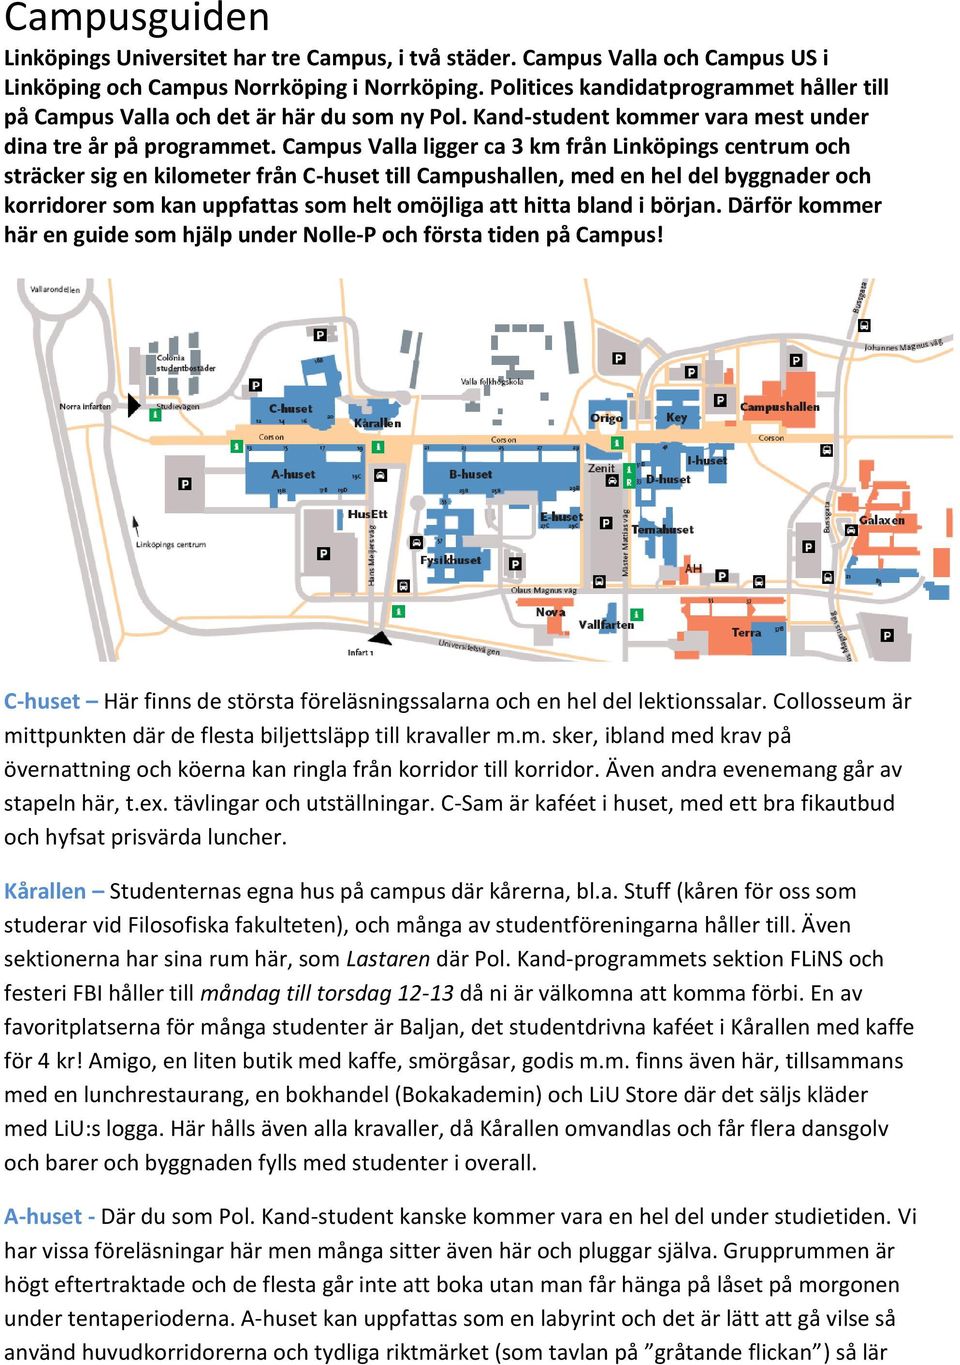 Campus Valla ligger ca 3 km från Linköpings centrum och sträcker sig en kilometer från C-huset till Campushallen, med en hel del byggnader och korridorer som kan uppfattas som helt omöjliga att hitta